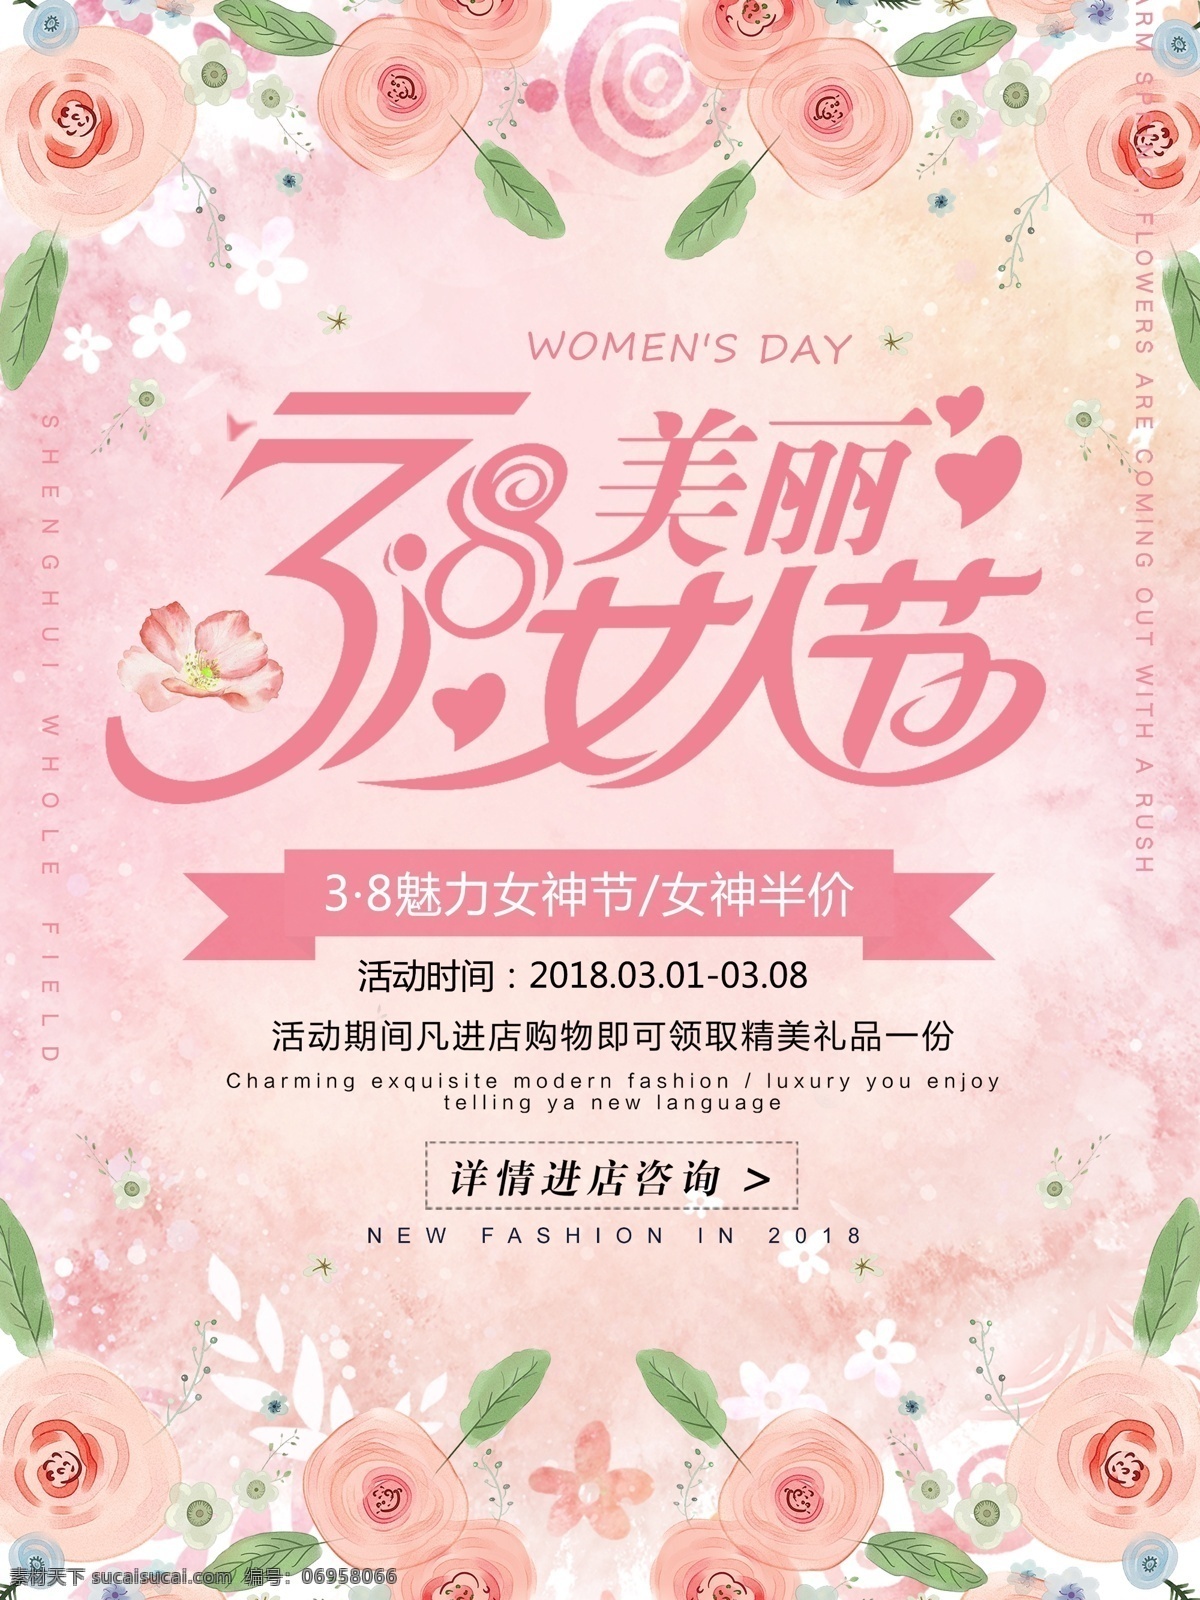 粉色 清新 唯美 三八妇女节 促销 海报 妇女节 3.8